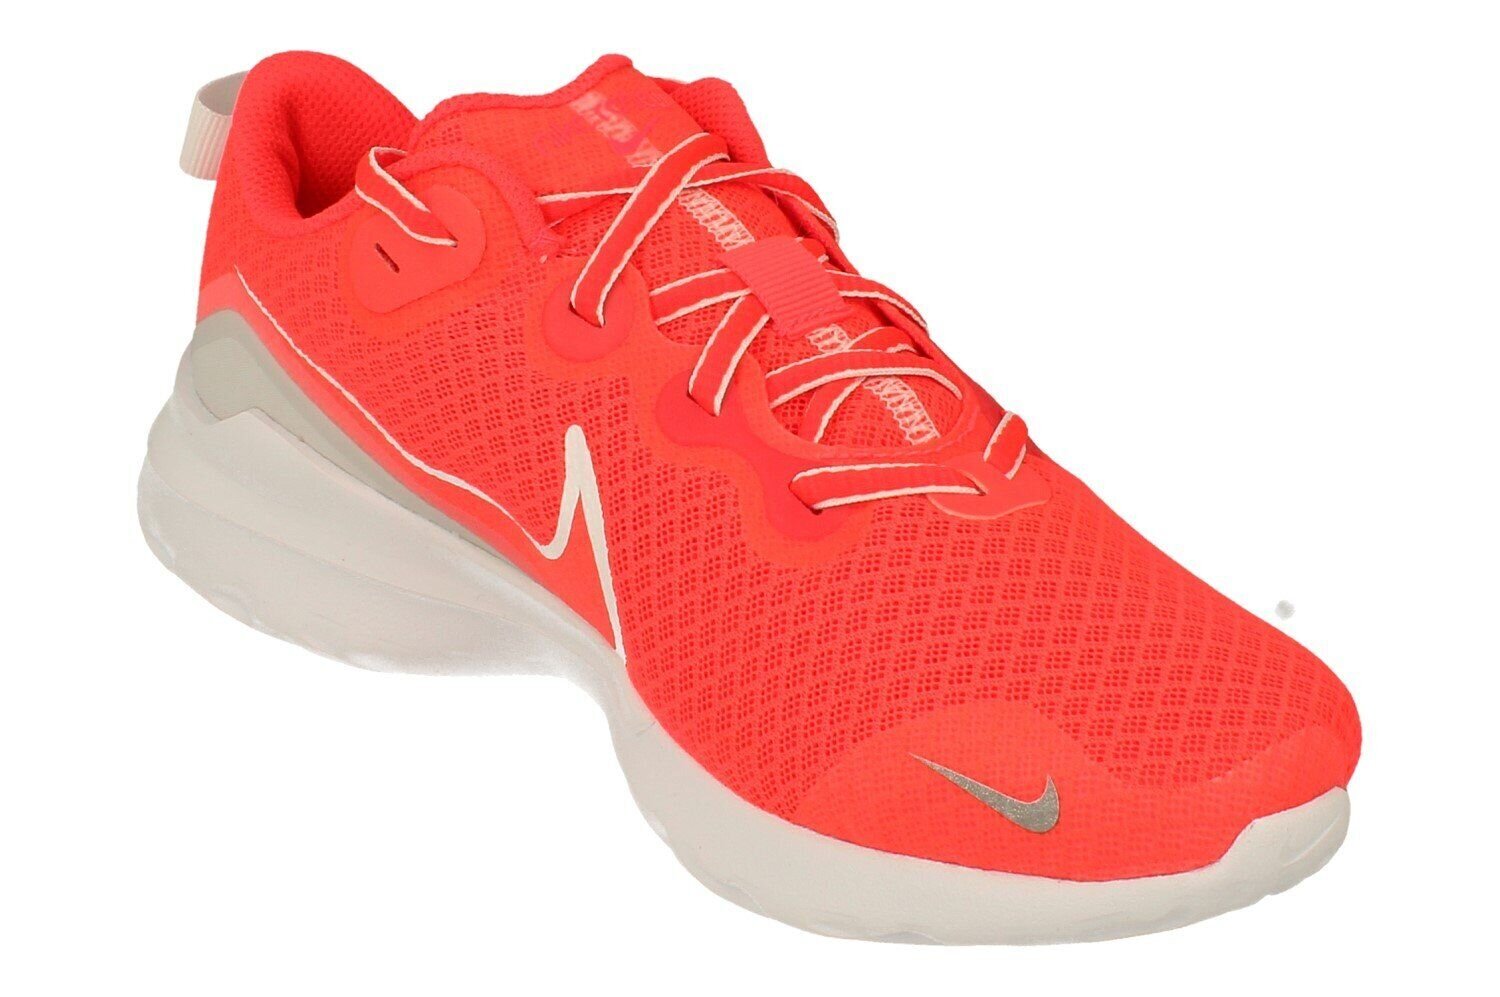 Sportiniai batai moterims Nike, raudoni kaina | pigu.lt